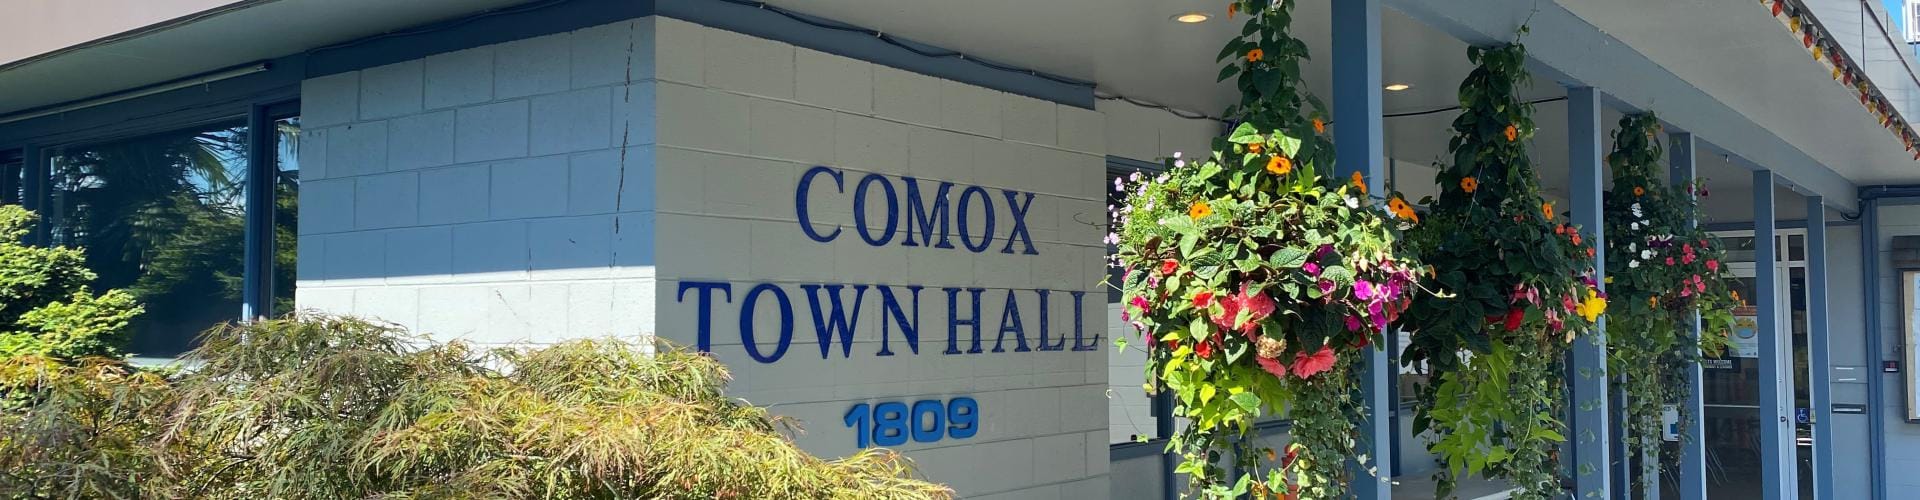 Comox Town Hall